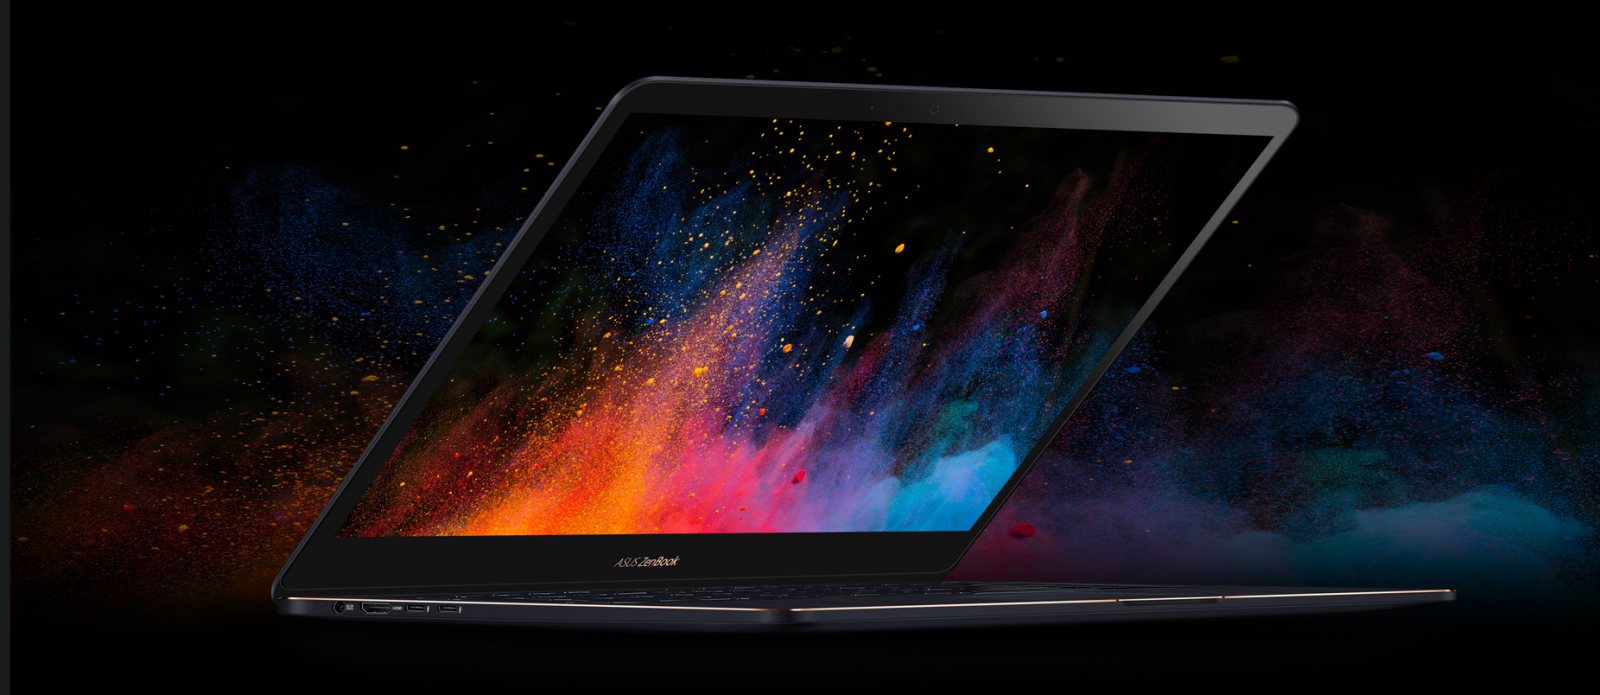 ASUS ZenBook Pro 15 UX550GD